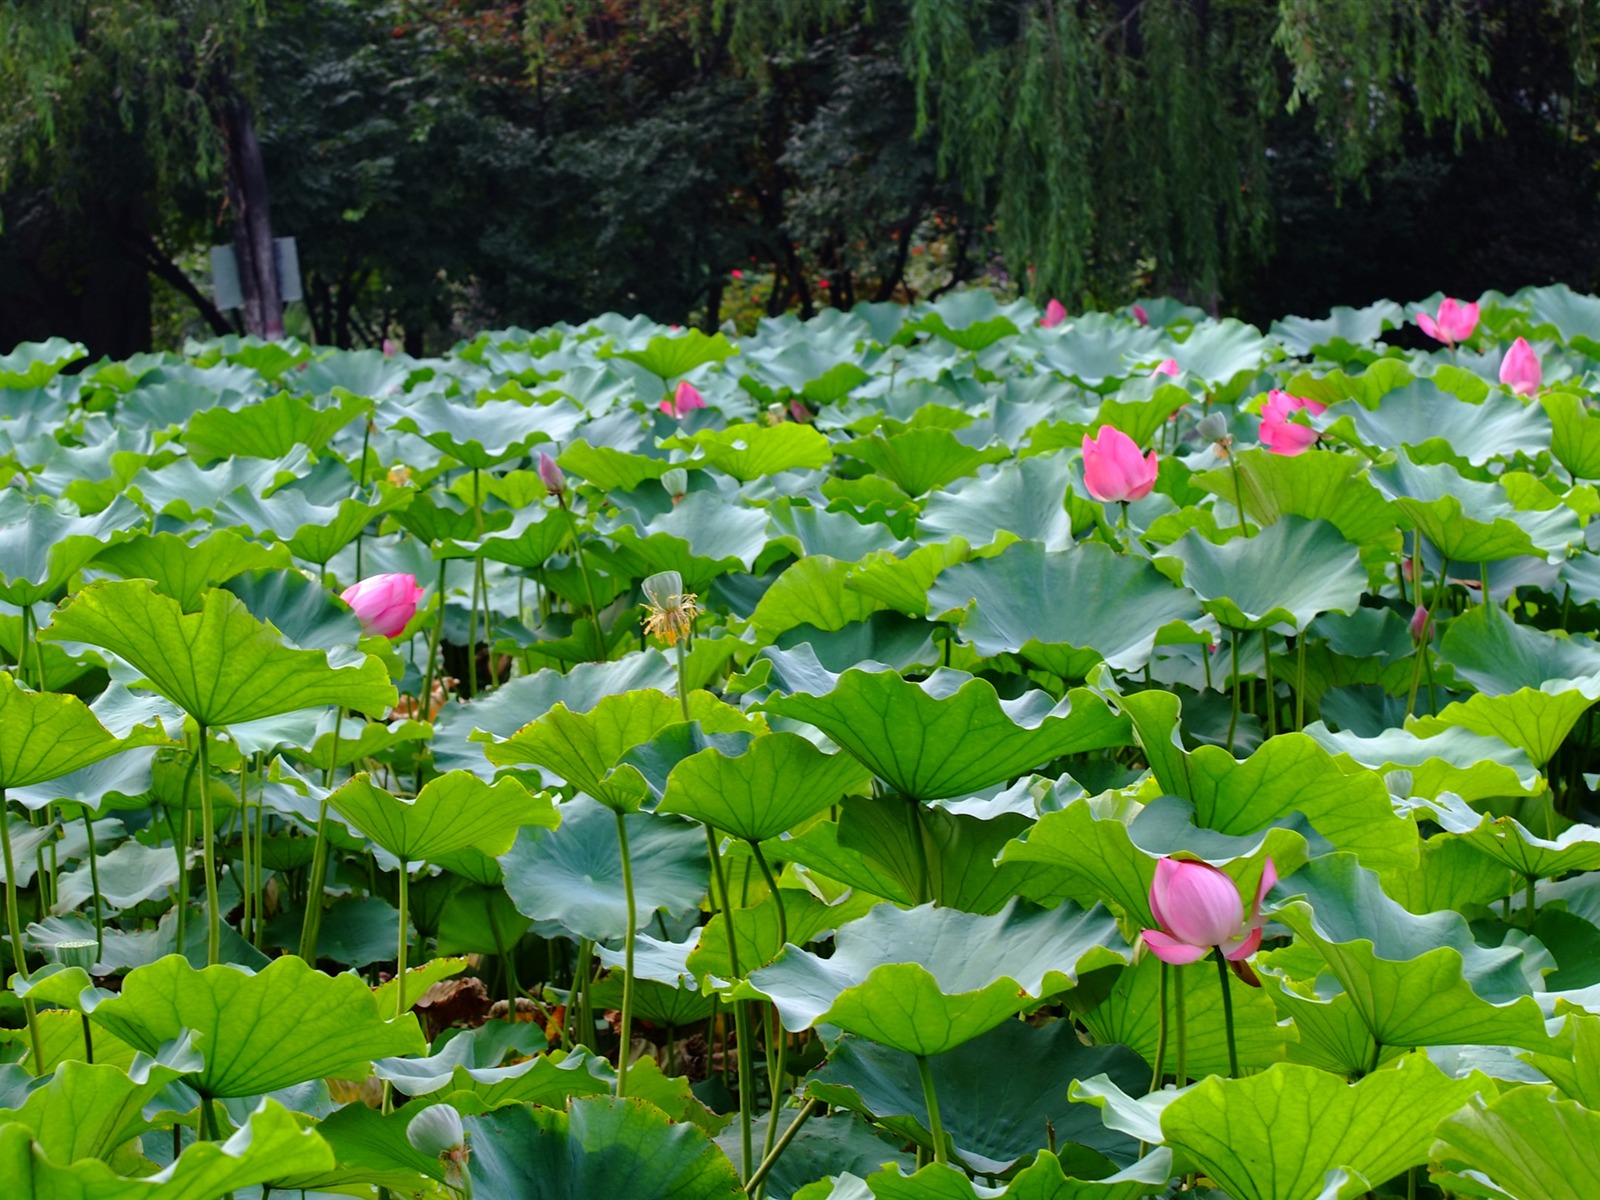 Rose Garden of the Lotus (rebar works) #10 - 1600x1200